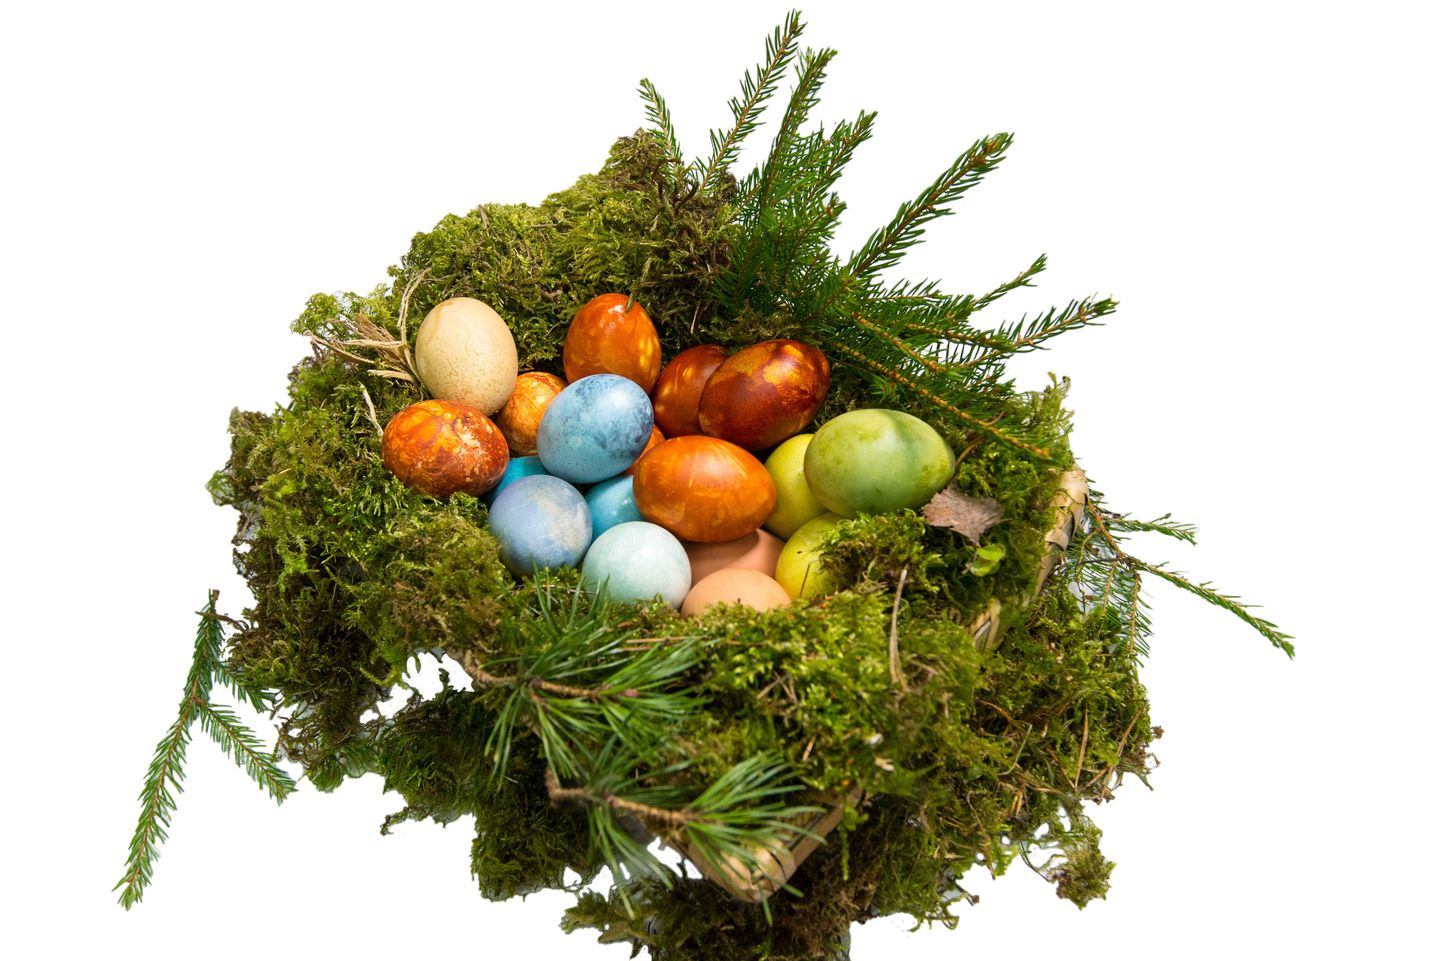 Valgamaalase töötajate värvitud munad moodustasid korvis kireva koosluse.